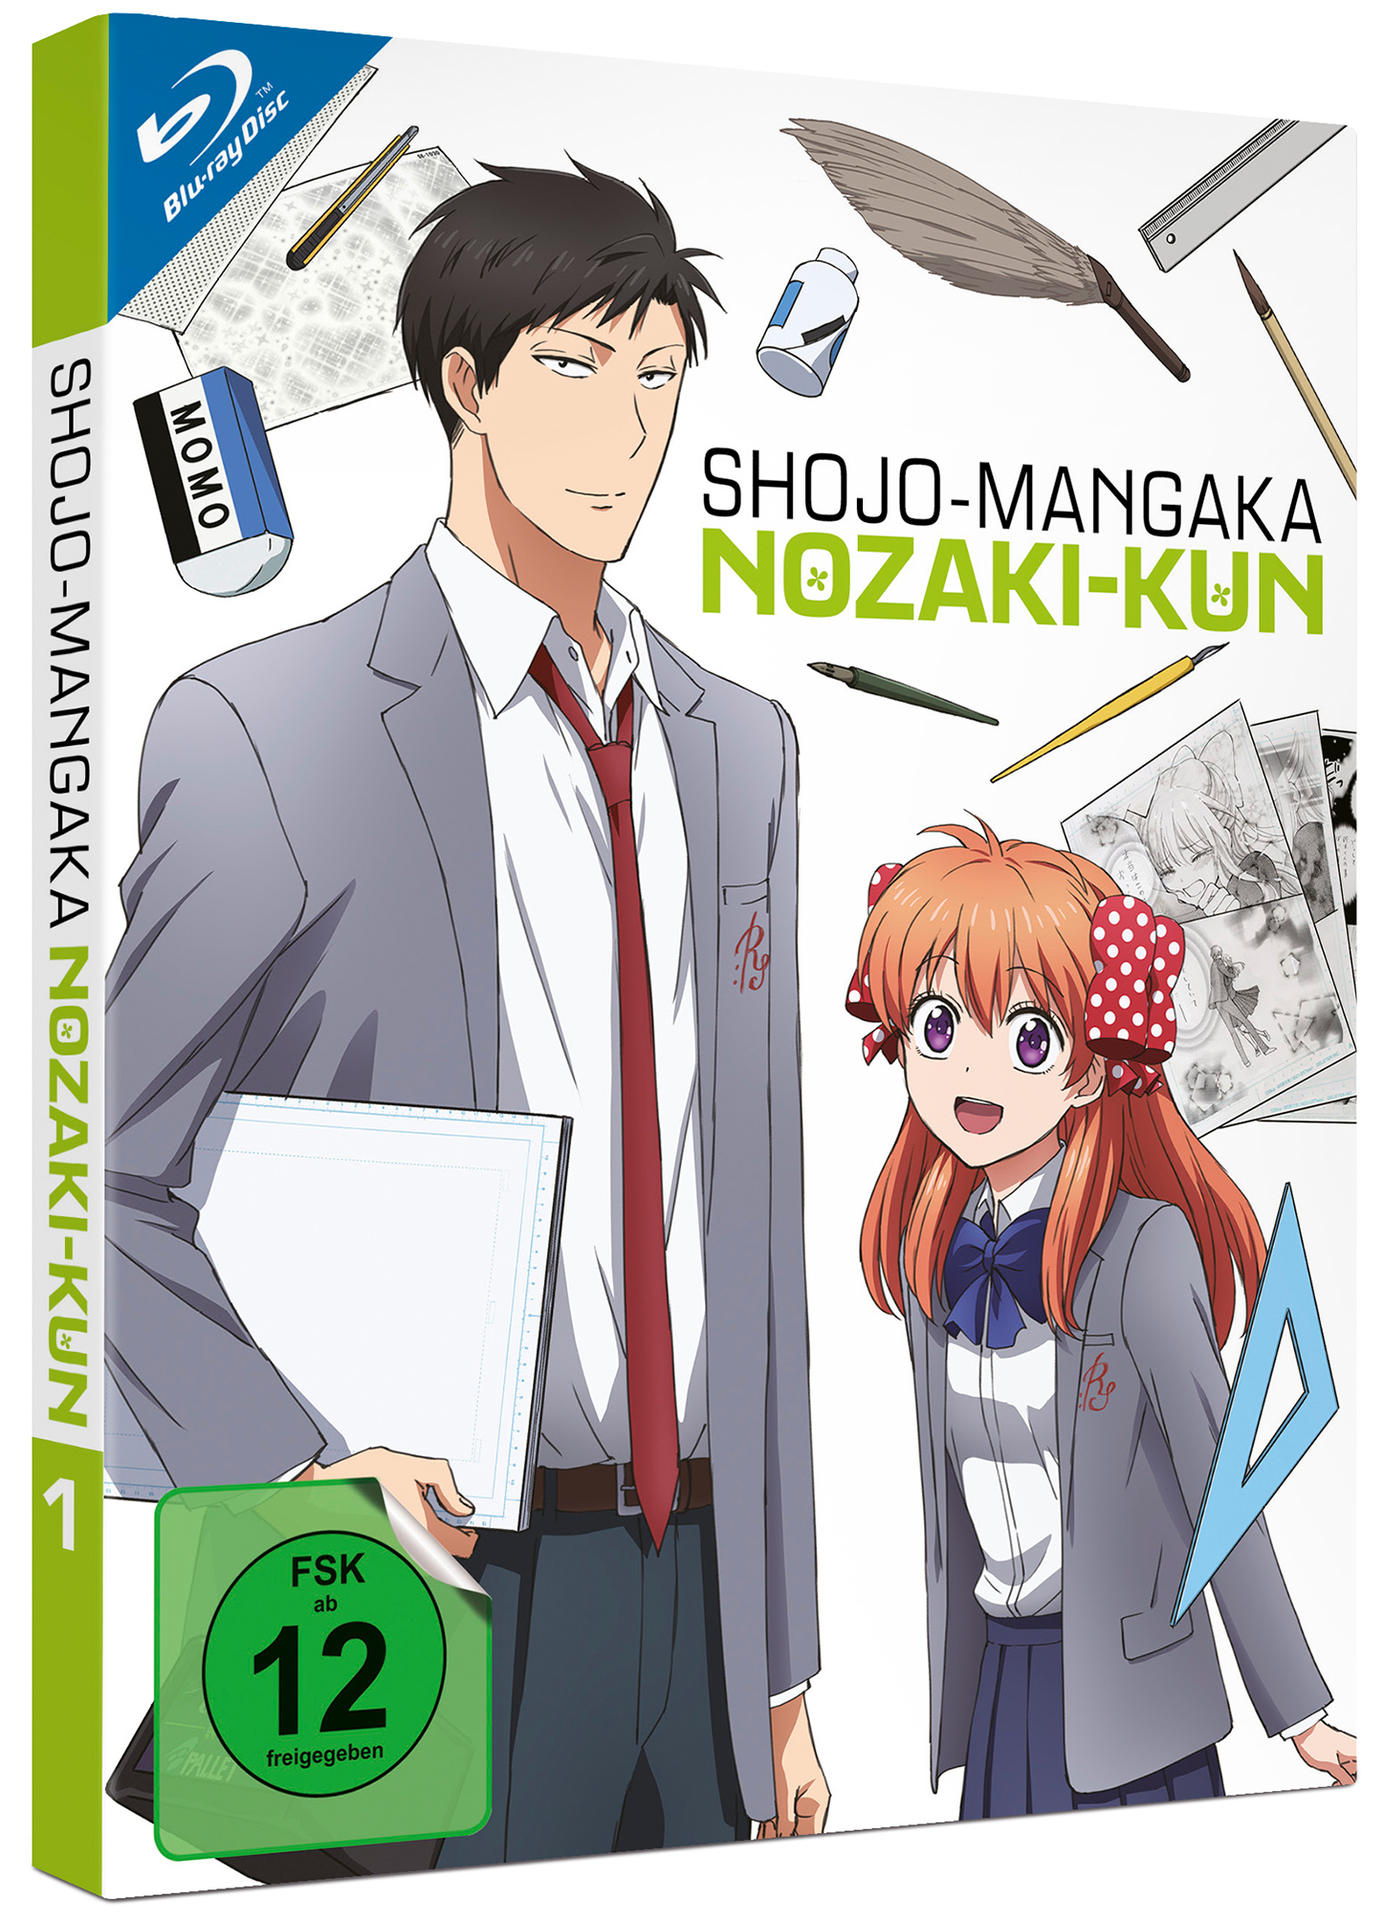 (Ep. Shojo-Mangaka 1-4) Nozaki-Kun 1 Blu-ray Vol.